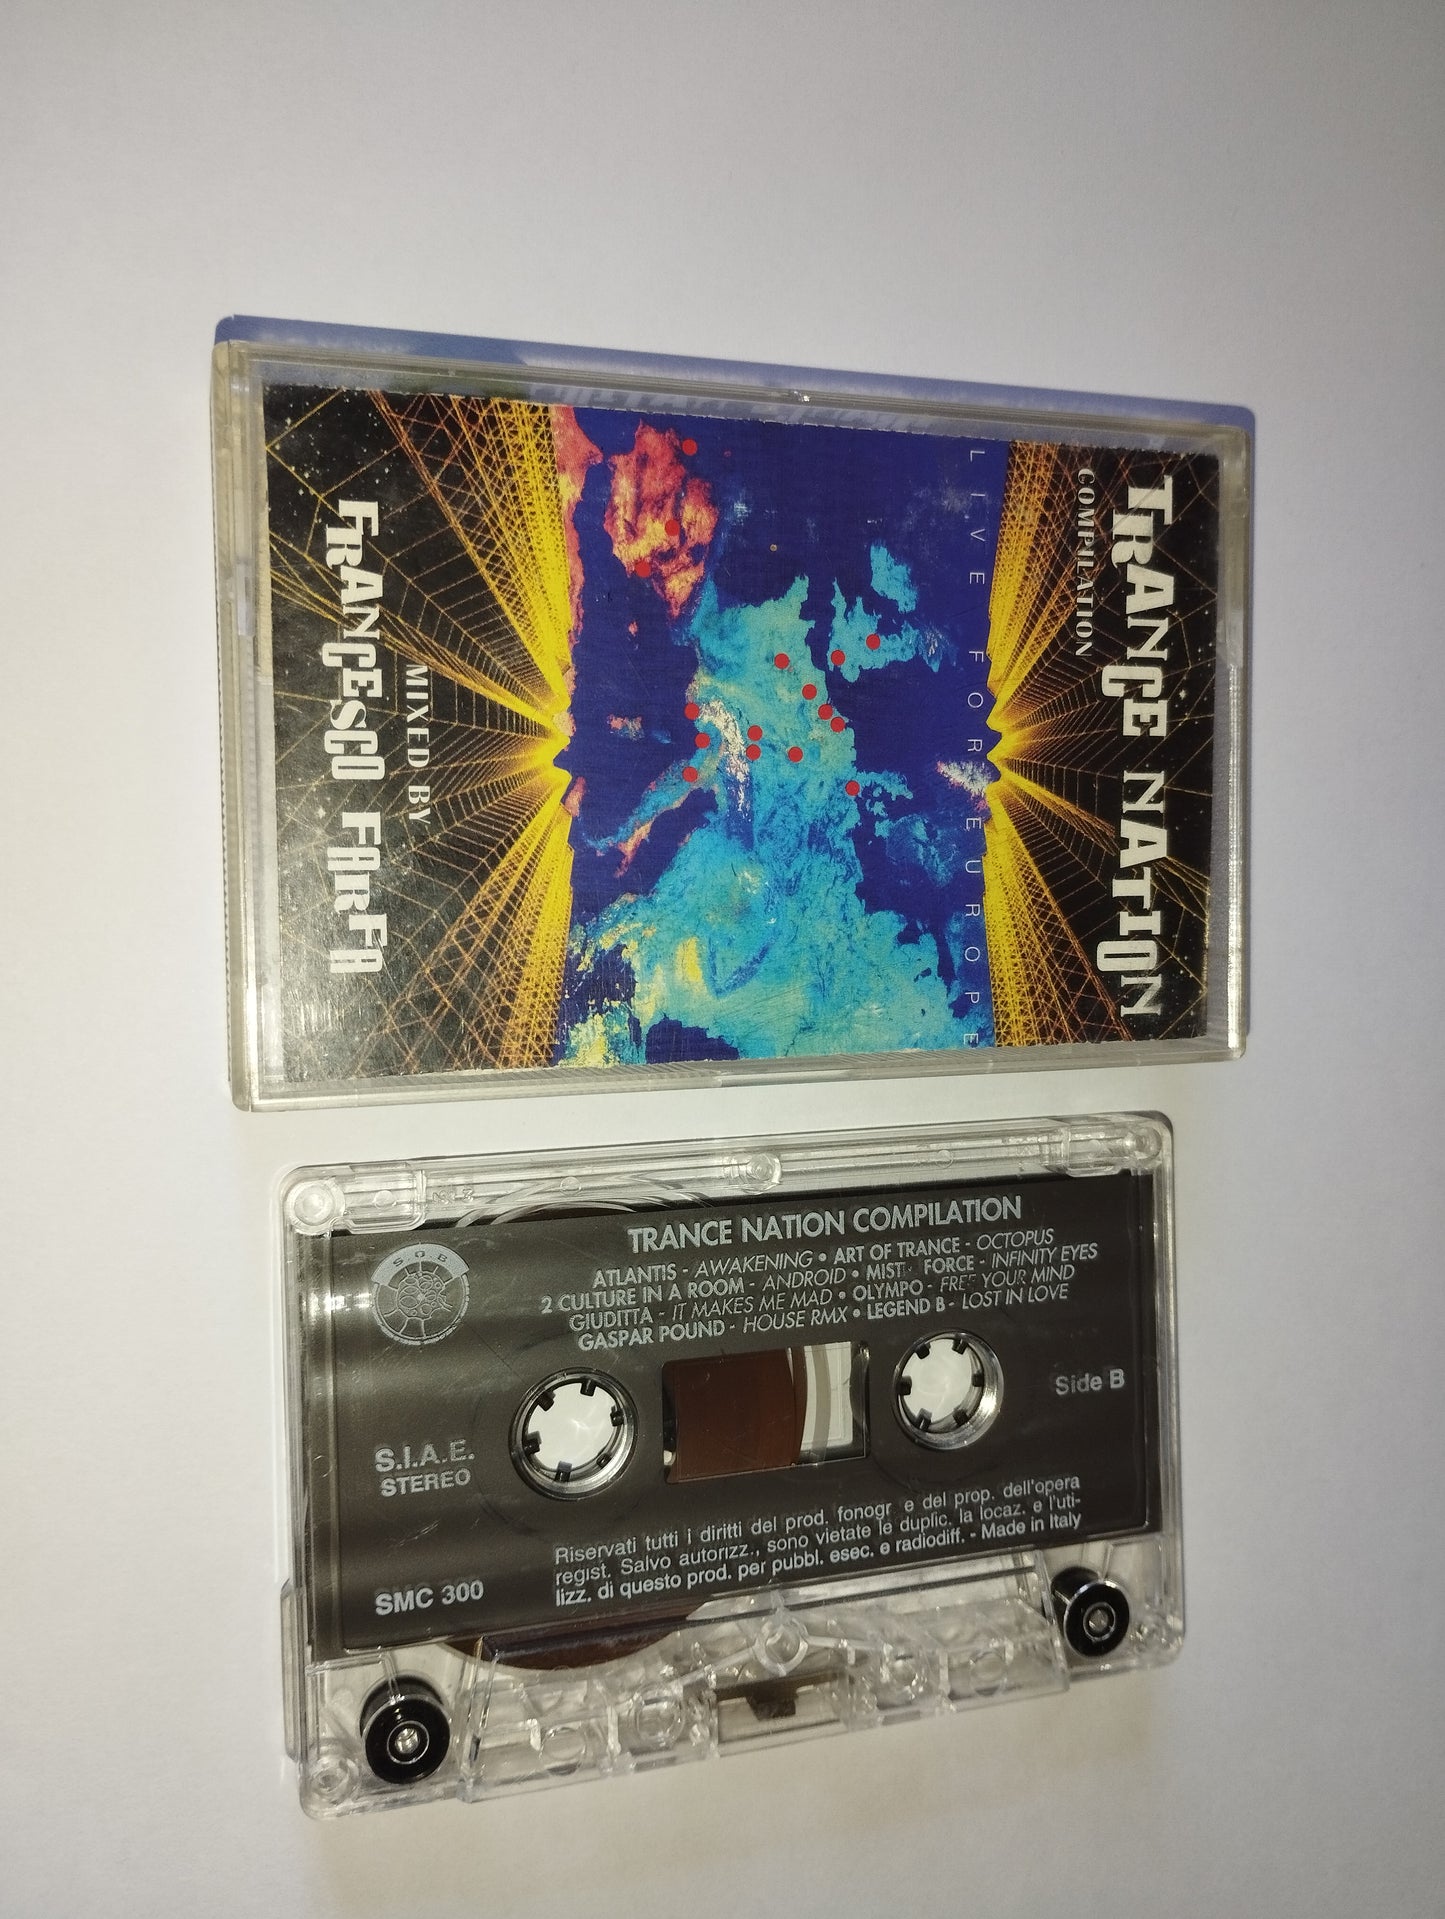 Trance Nation Compilation F.Farfa Musicassetta
Edita nel 1995 da S.O.B. Cod.SMC 300
Genere:Electronic
Stile:trance